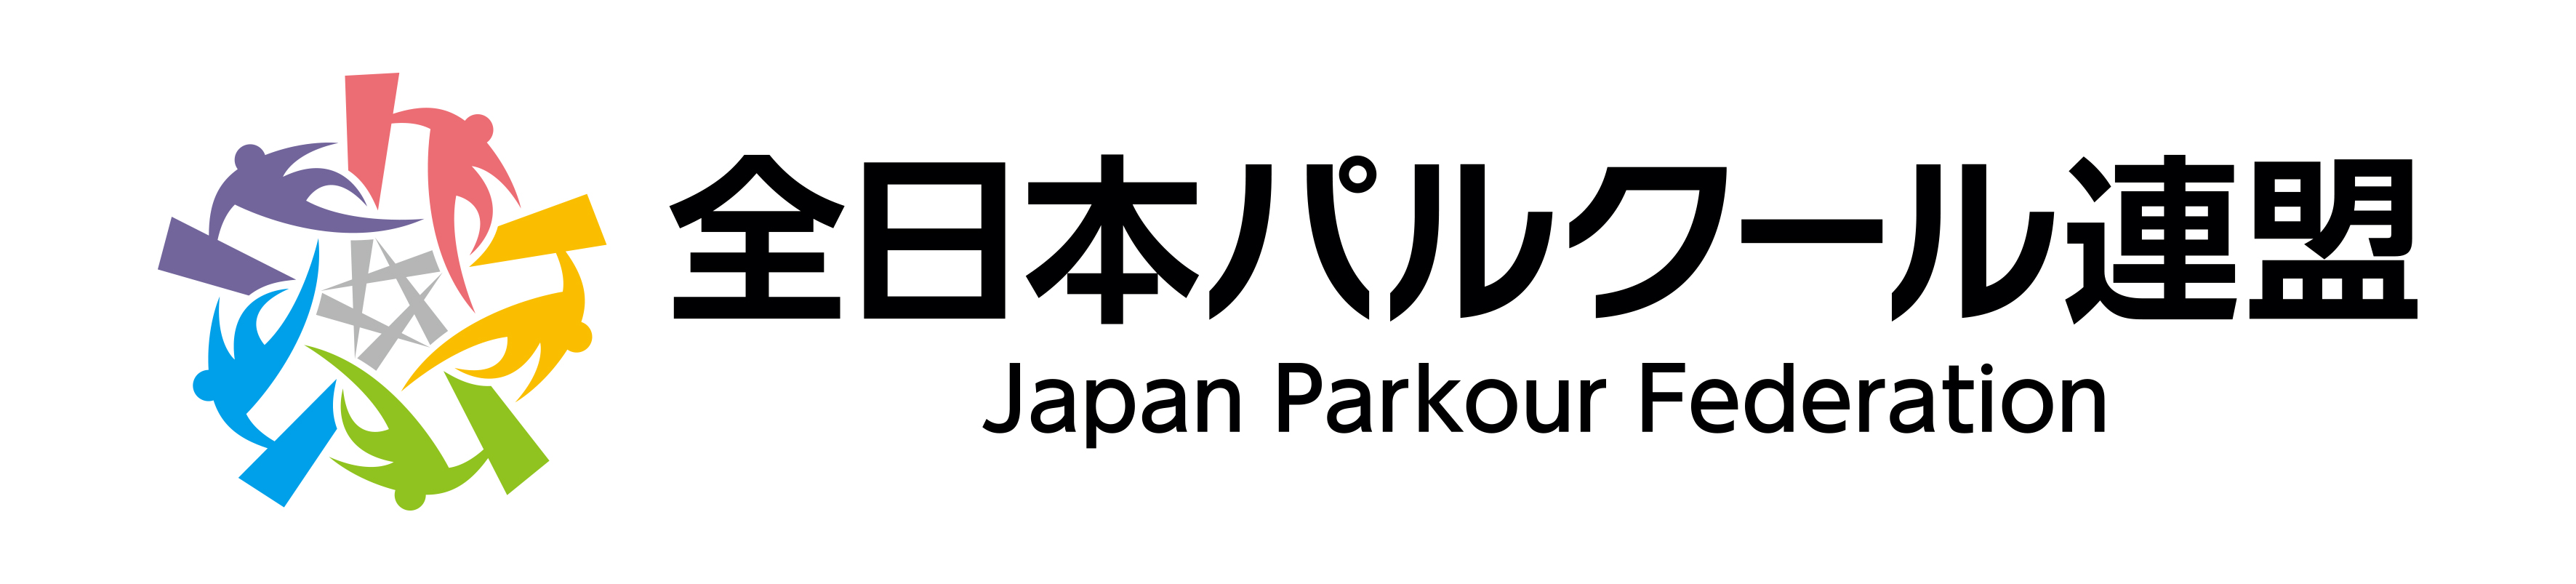 一般社団法人全日本パルクール連盟